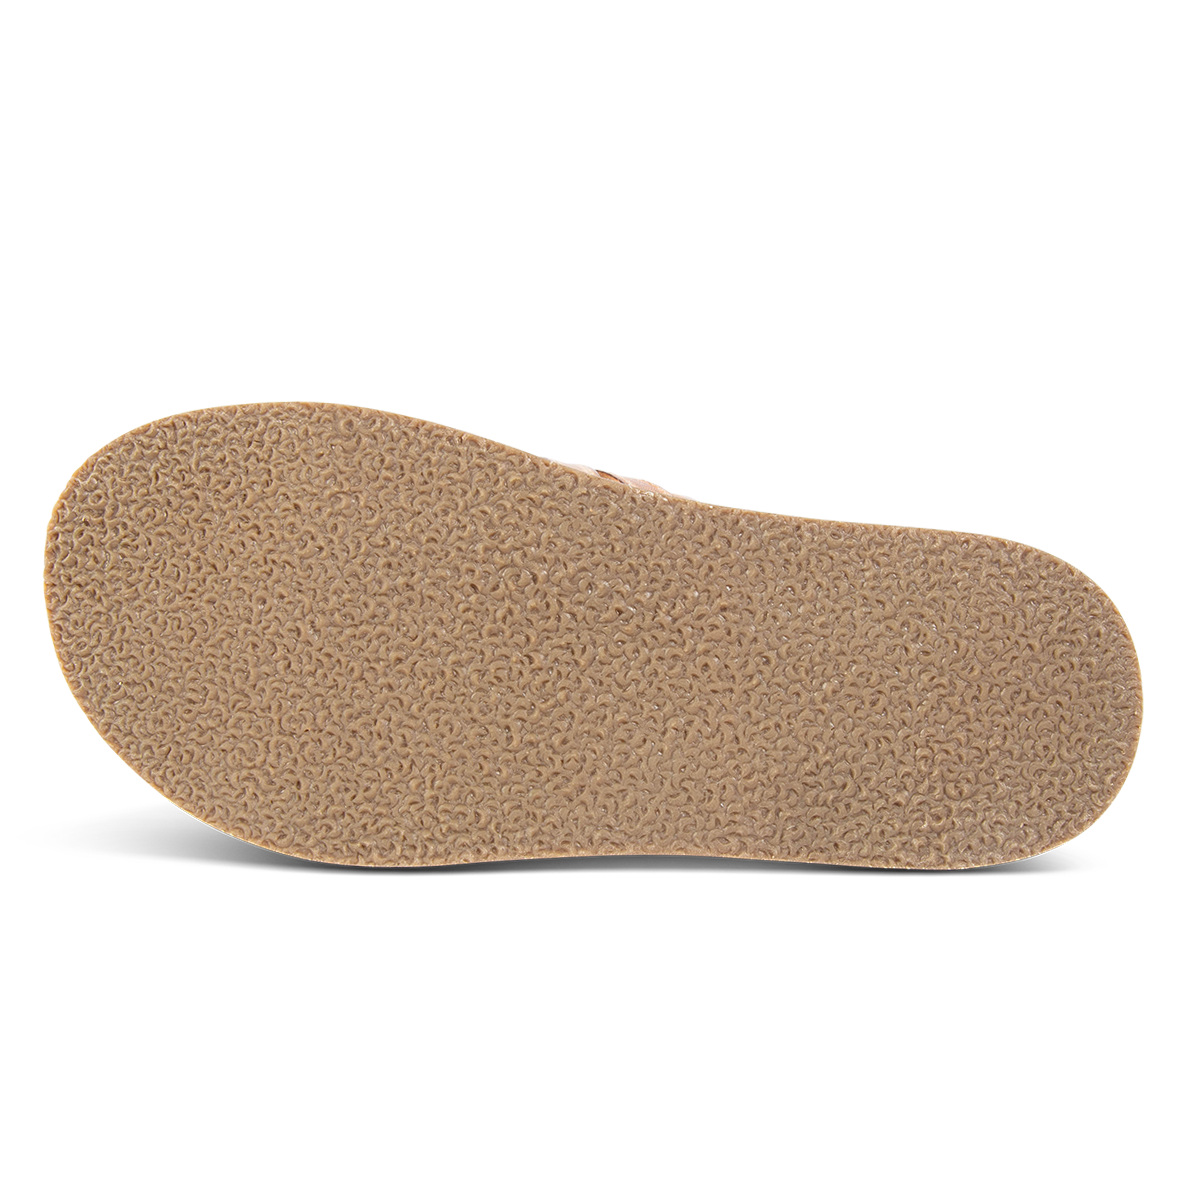 Rubber grip sole on FREEBIRD women's Fleetwood camel flat slip-on sandal